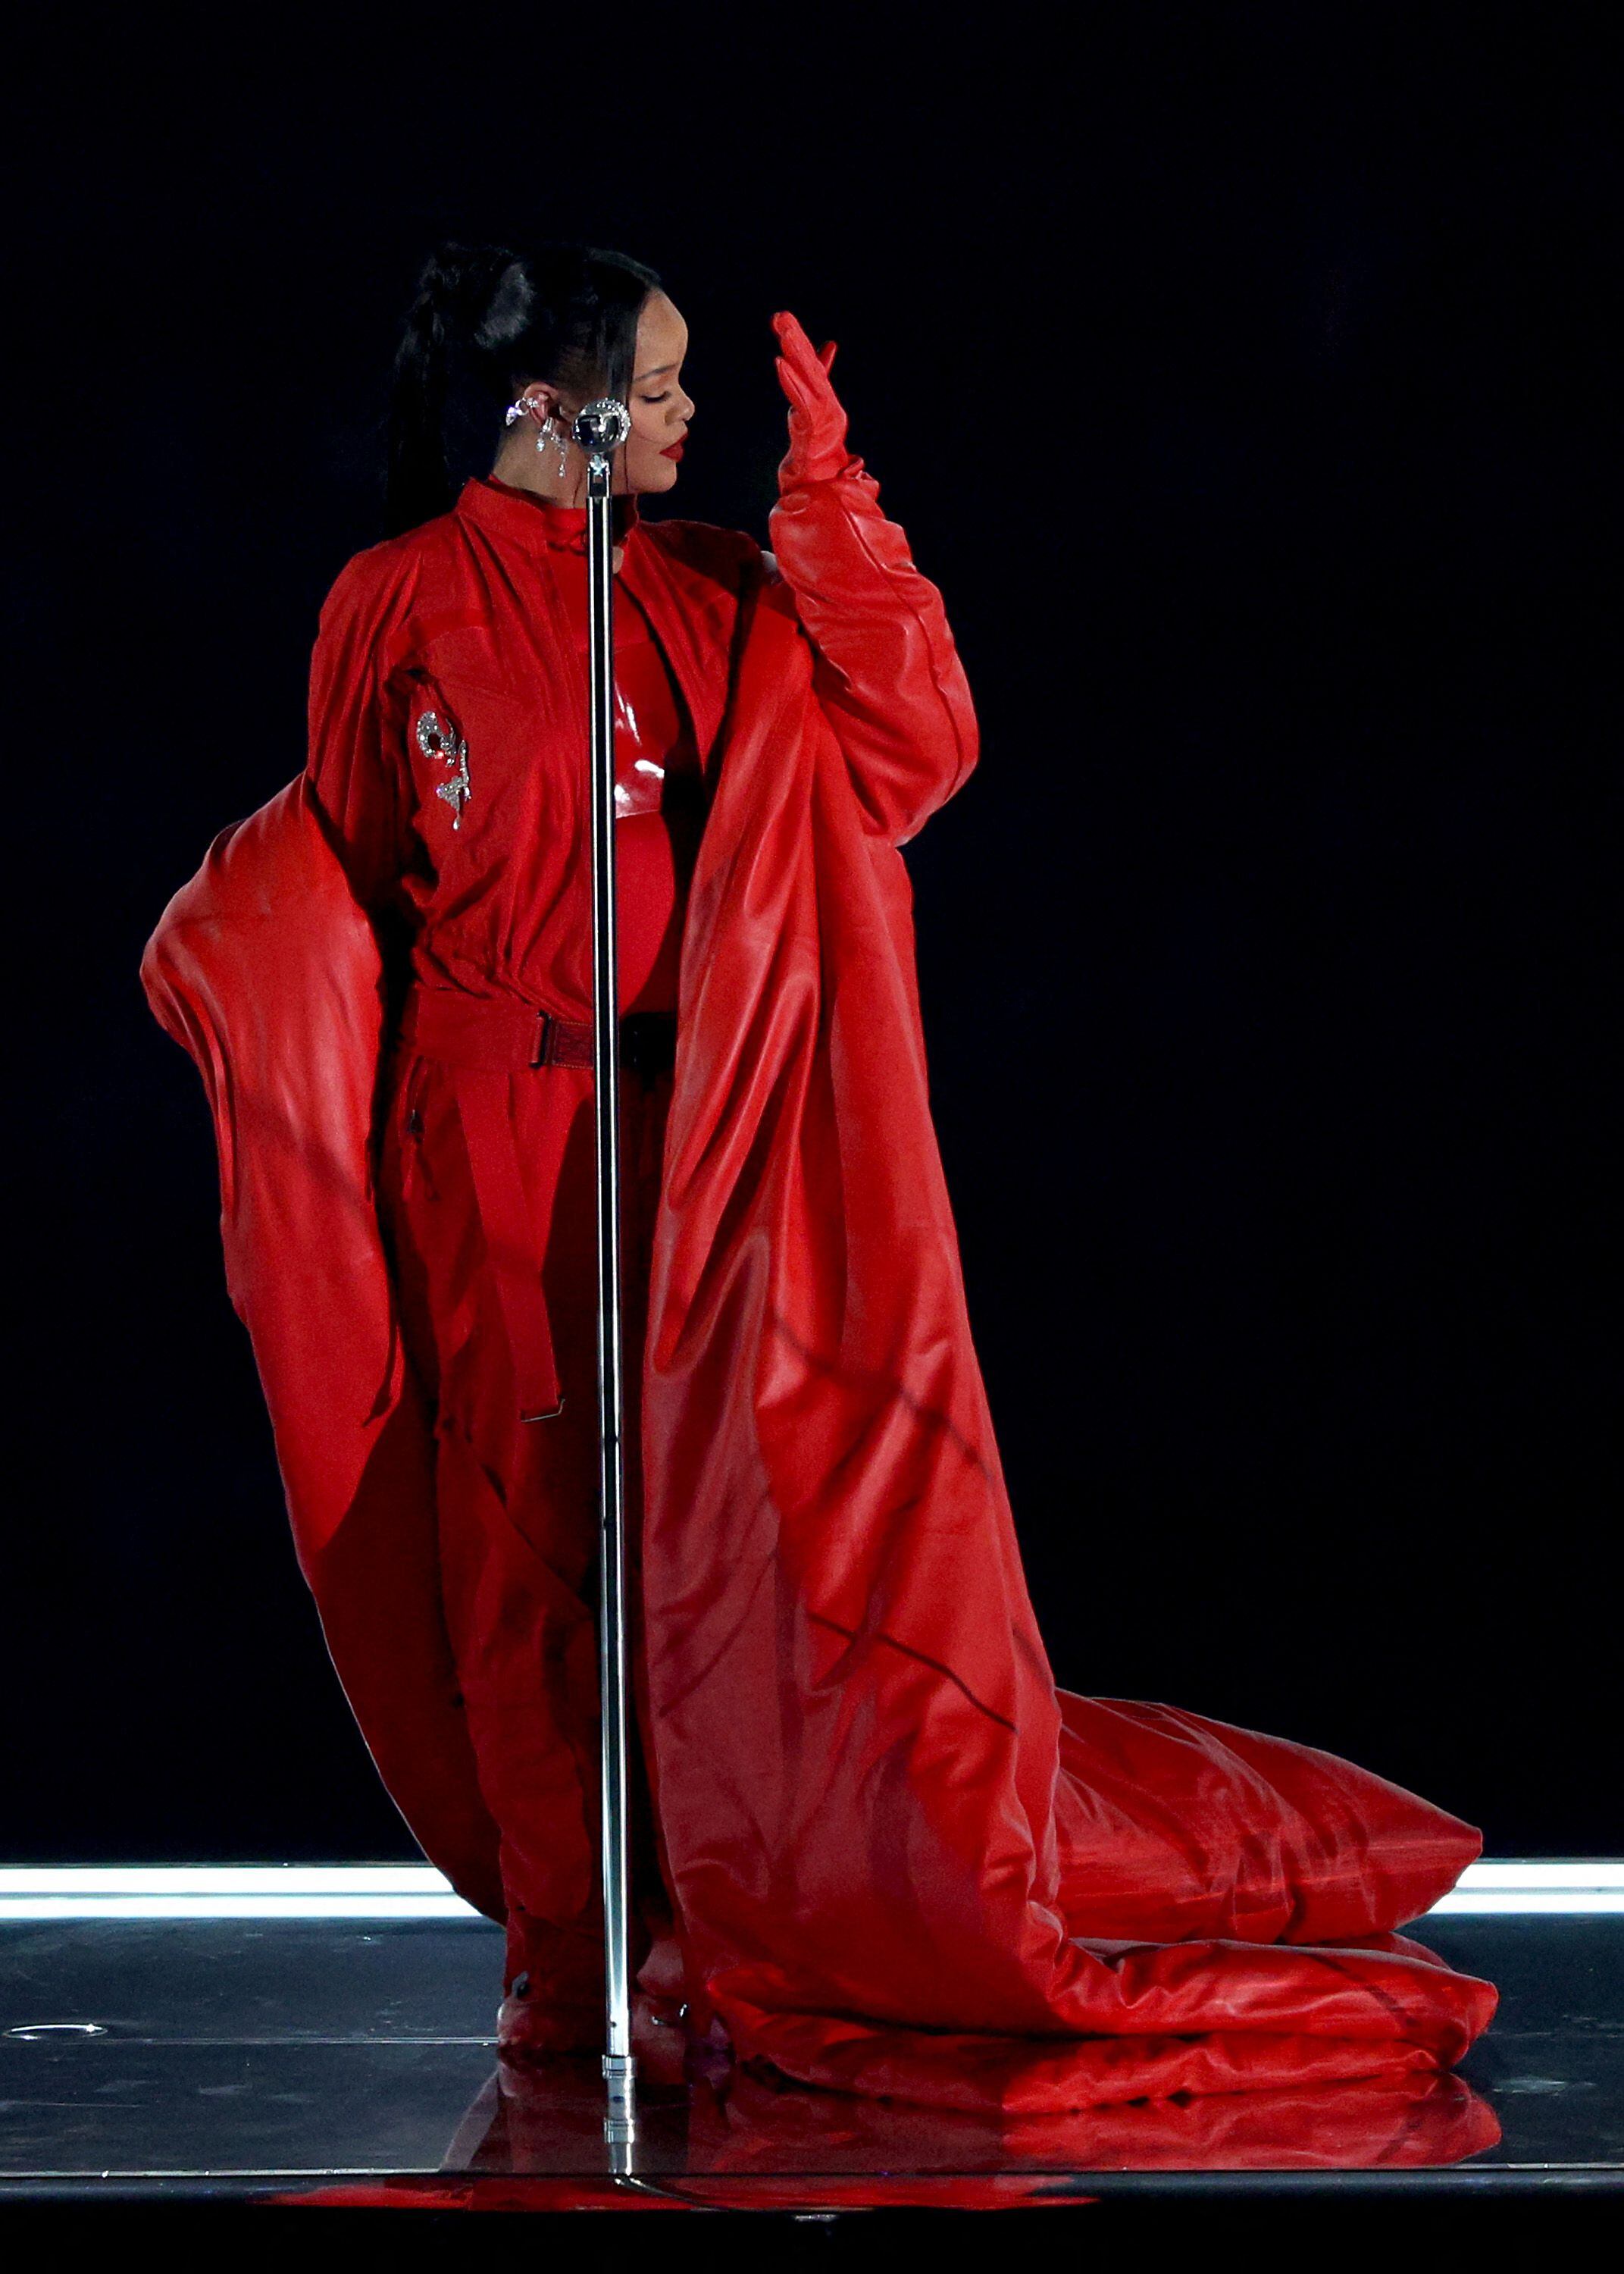 Rihanna no bailó tanto como es su costumbre, sino que se dedicó a hacer notar el talento vocal con el que cuenta.